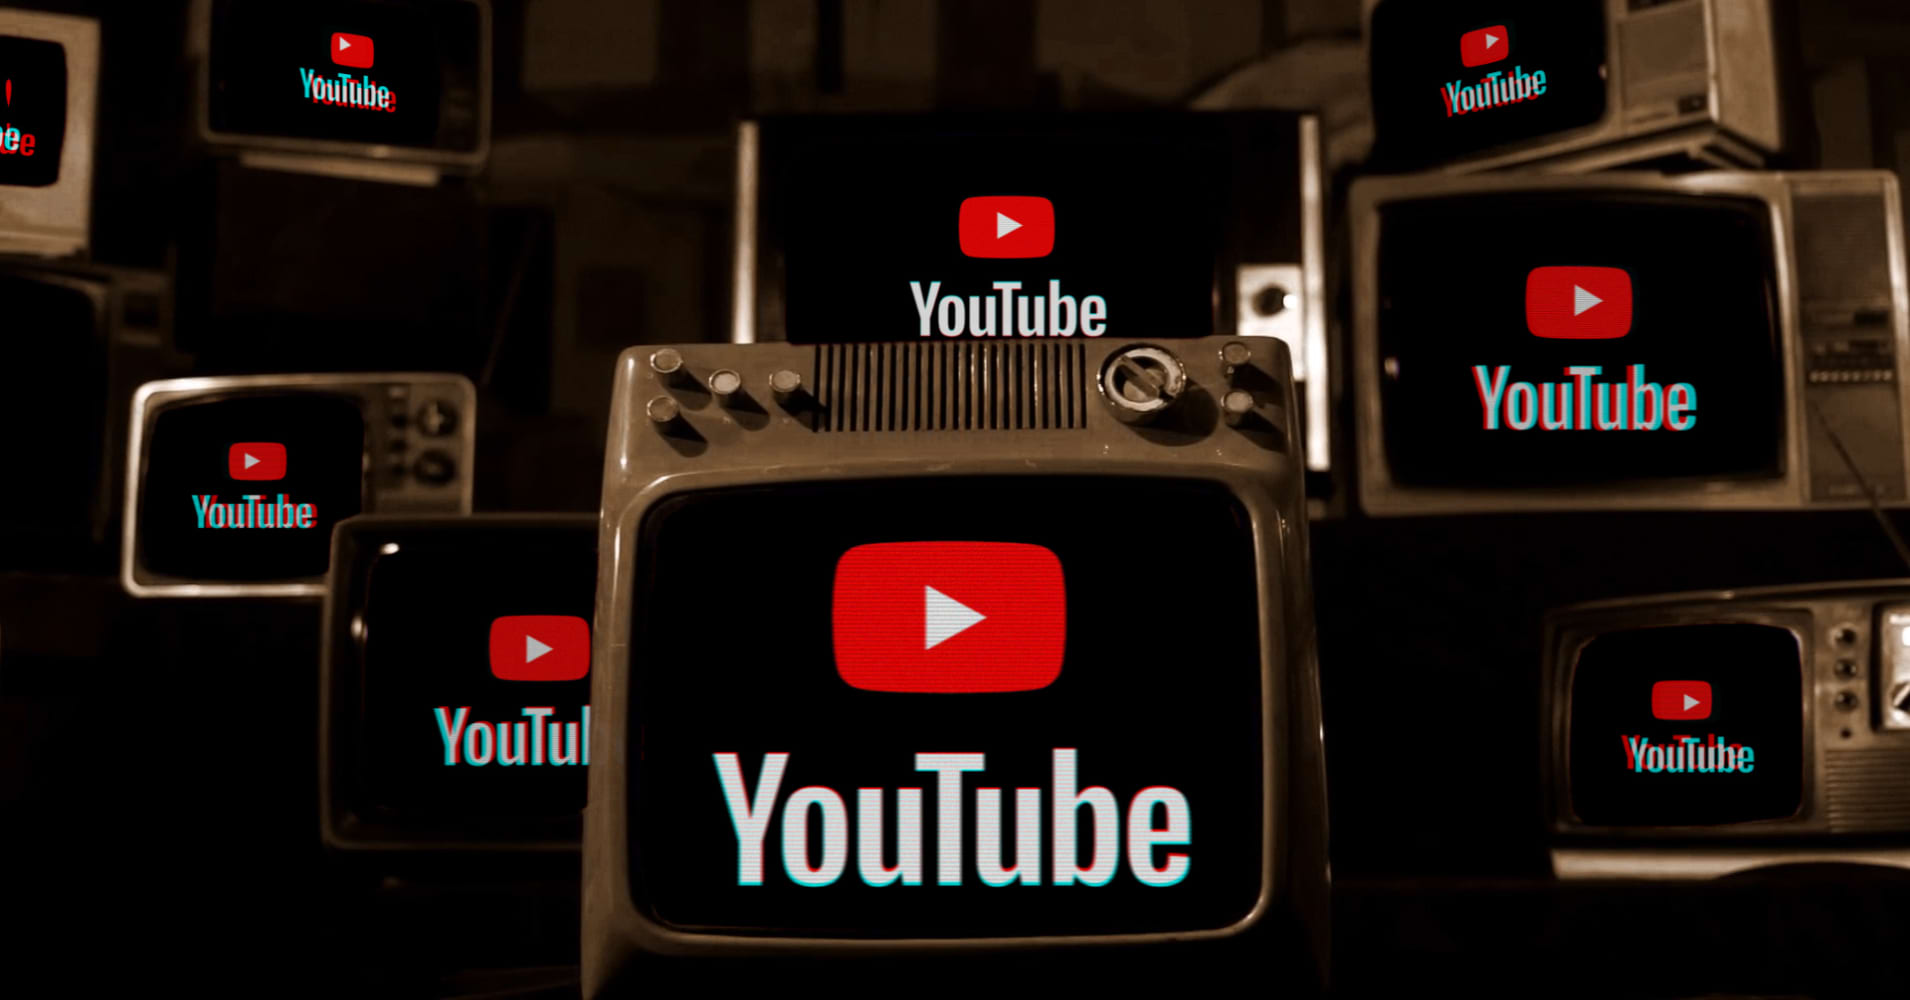 YouTube na prośbę SBU zablokował prawie 500 prorosyjskich kanałów z 15 milionami subskrybentów